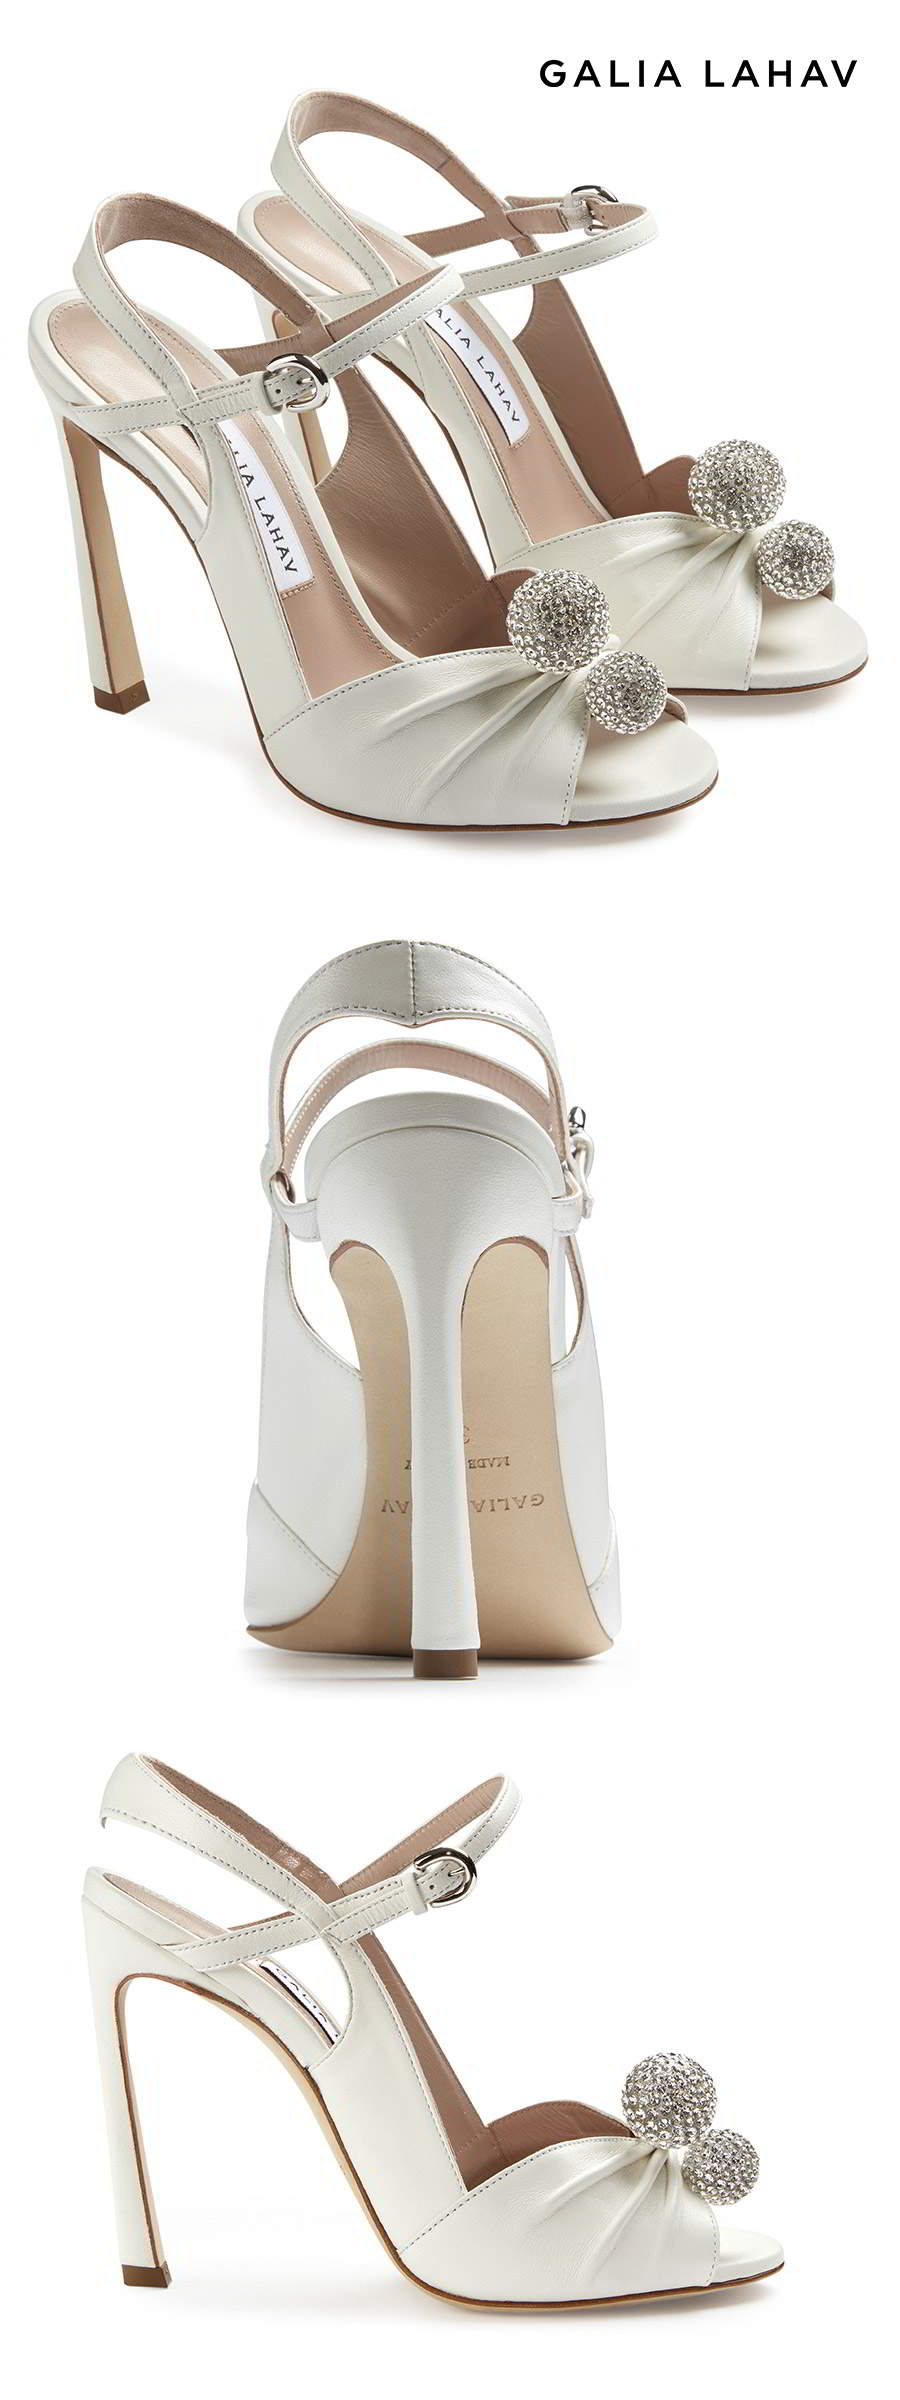 galia lahav shoes fall 2021 bridal strappy peep toe high heel wedding shoe (kate diamonte) mv